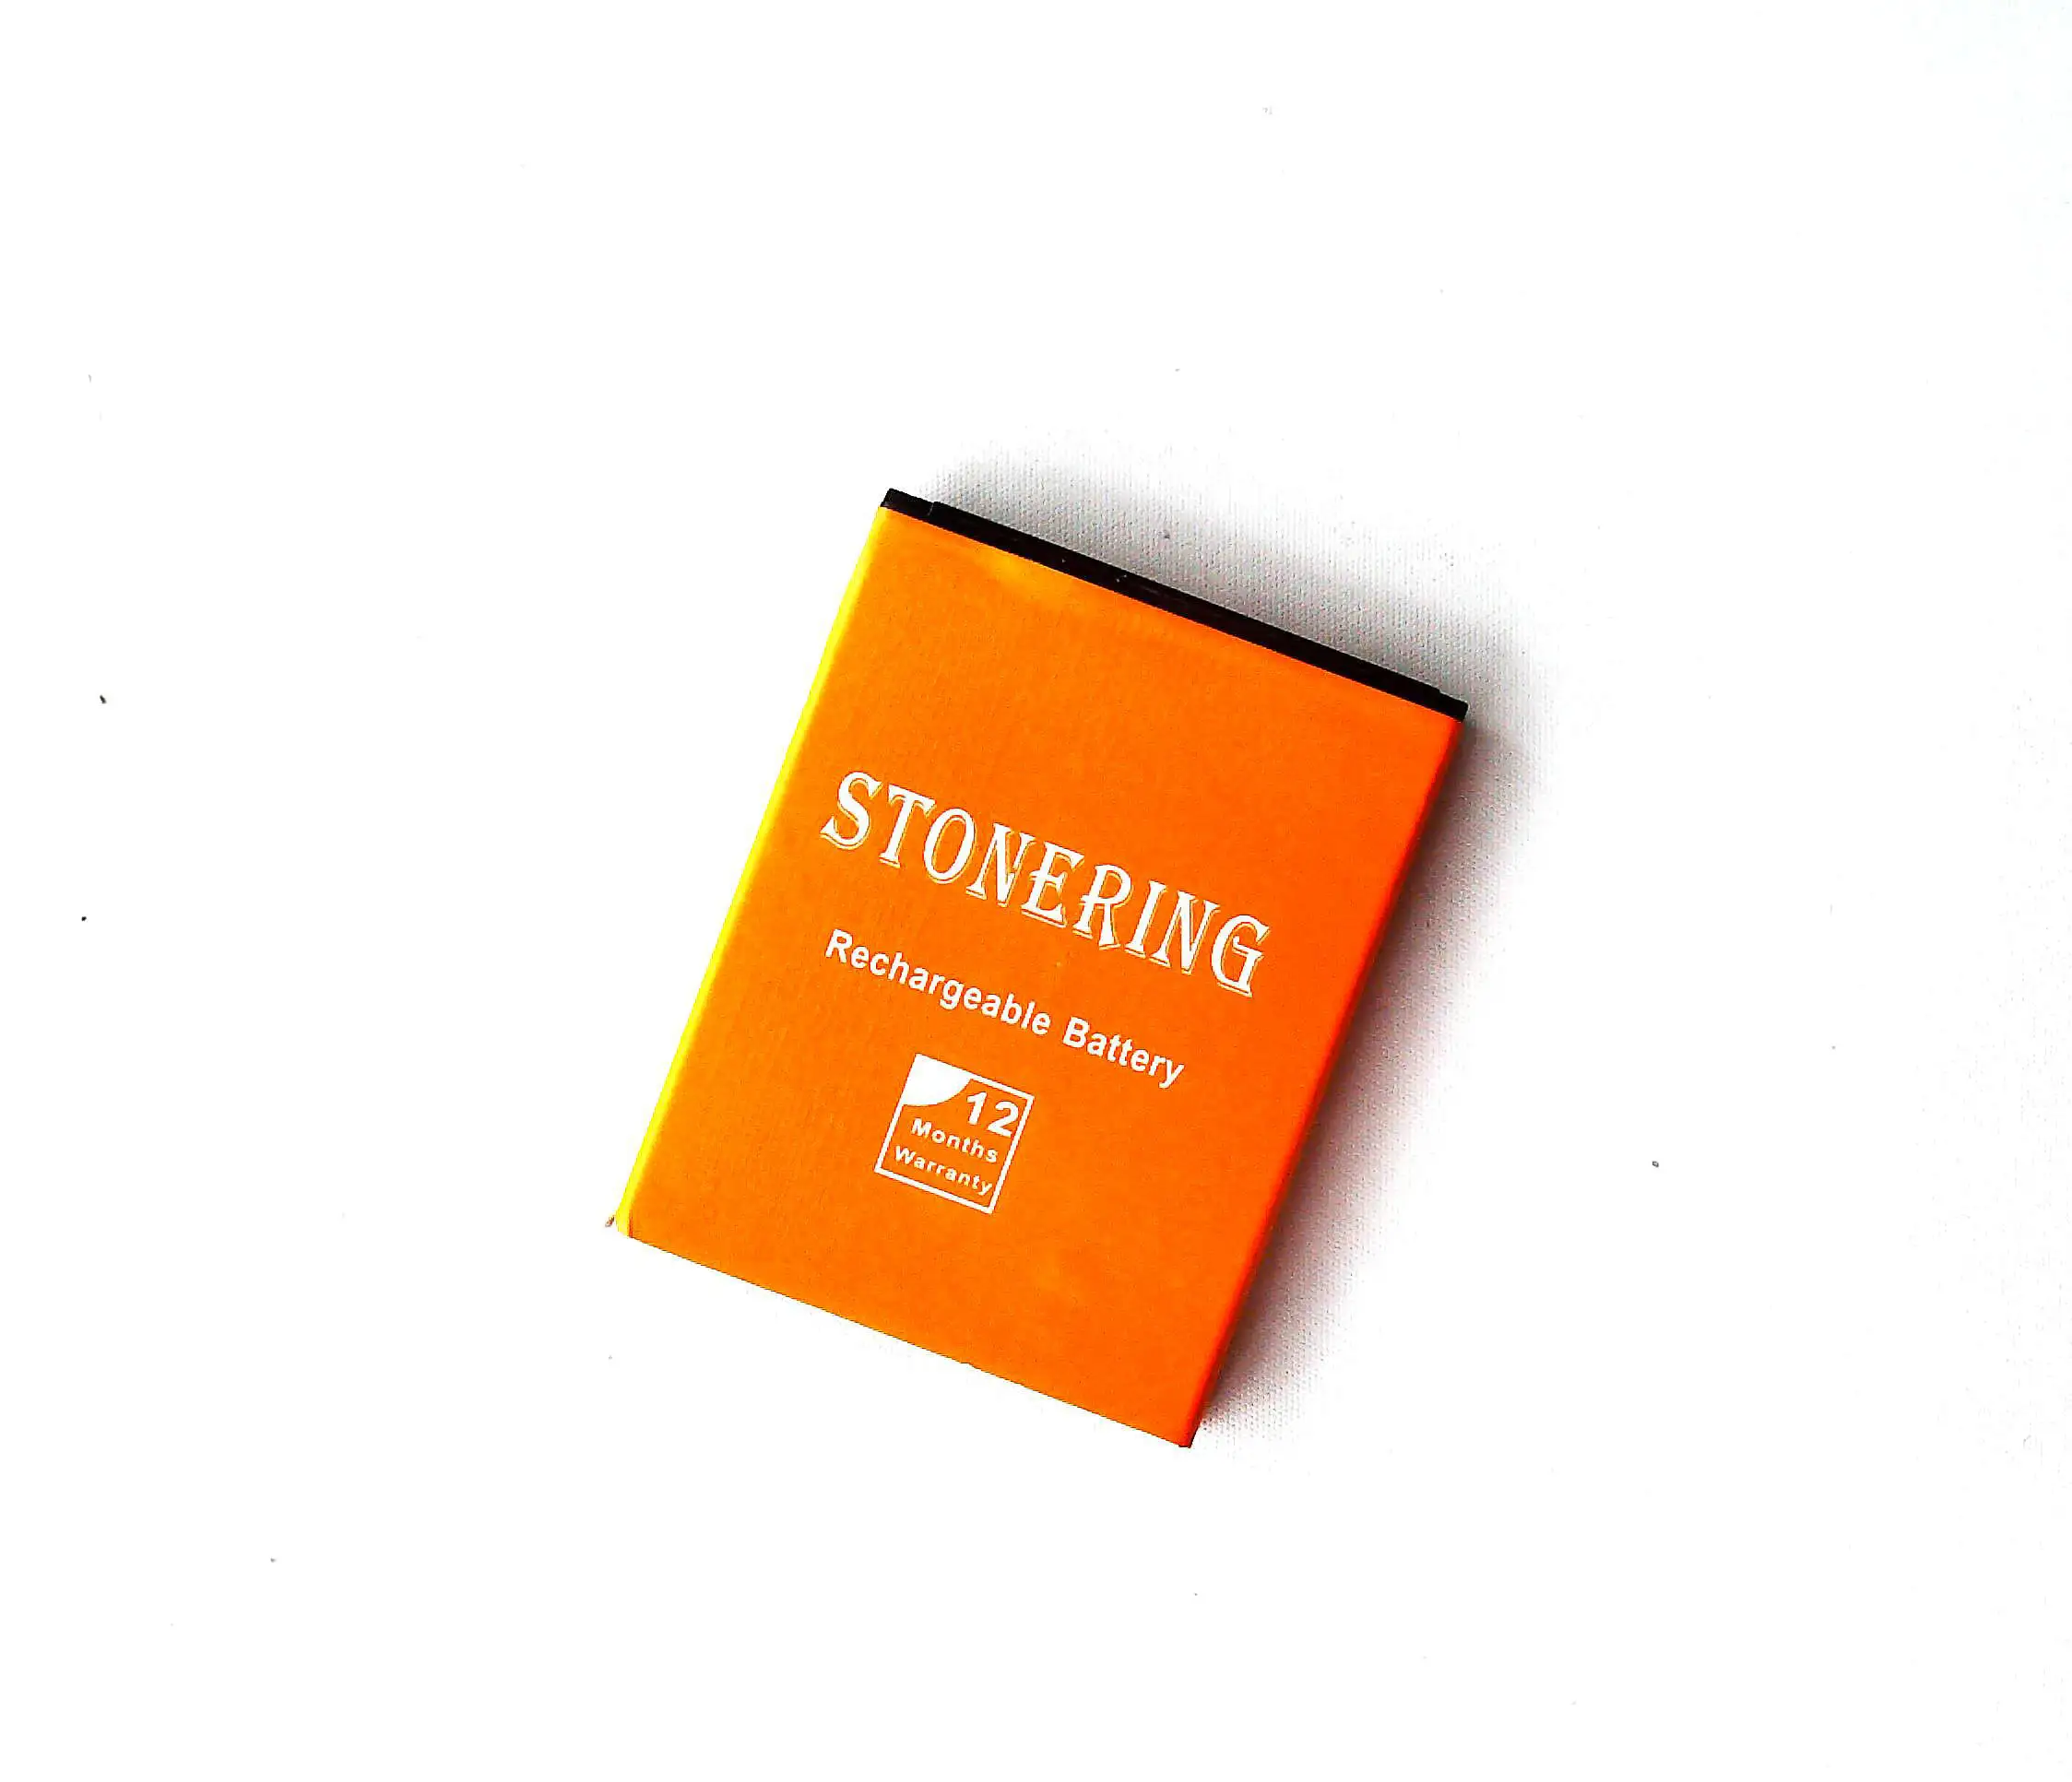 Stonering Батарея 1800 мА/ч, TLi014A1 для Alcatel Pixi 3 4,5 (4,5) OT-4013D OT-4010 4010 OT-4030 4030 огонь 4012X5020 5020D